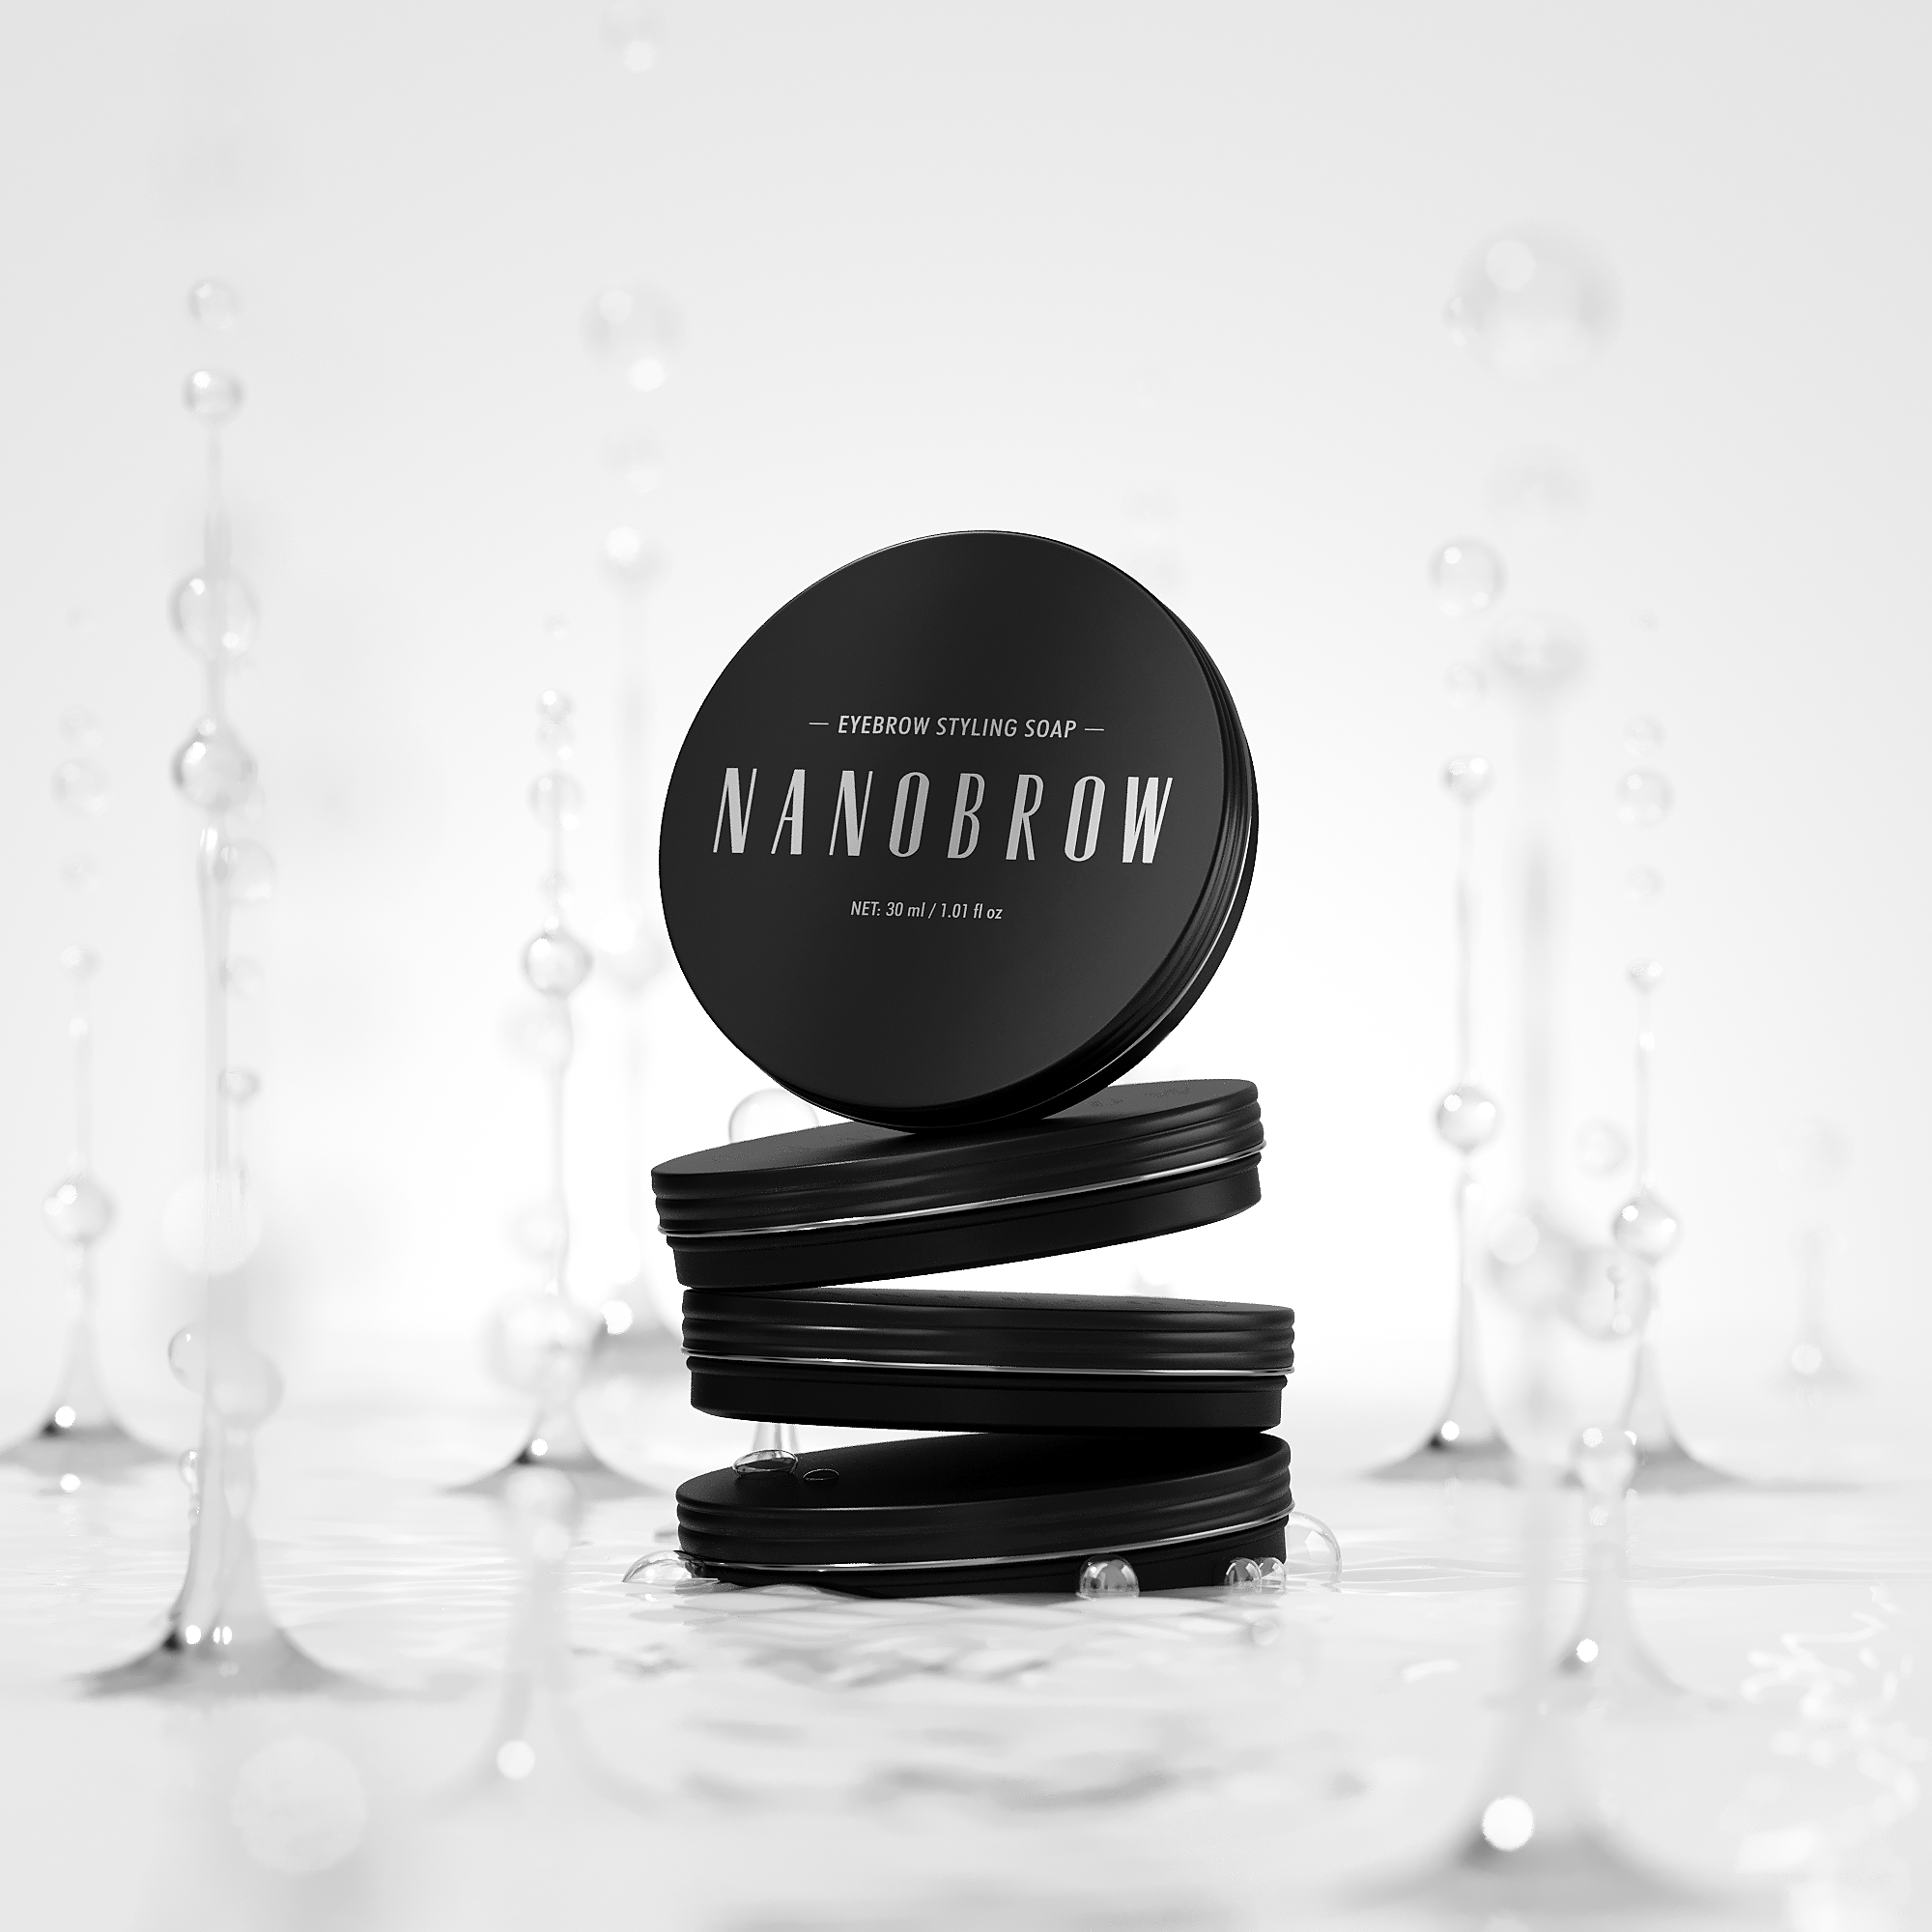 Nanobrow Eyebrow Styling Soap: forte, efficace e a lunga durata